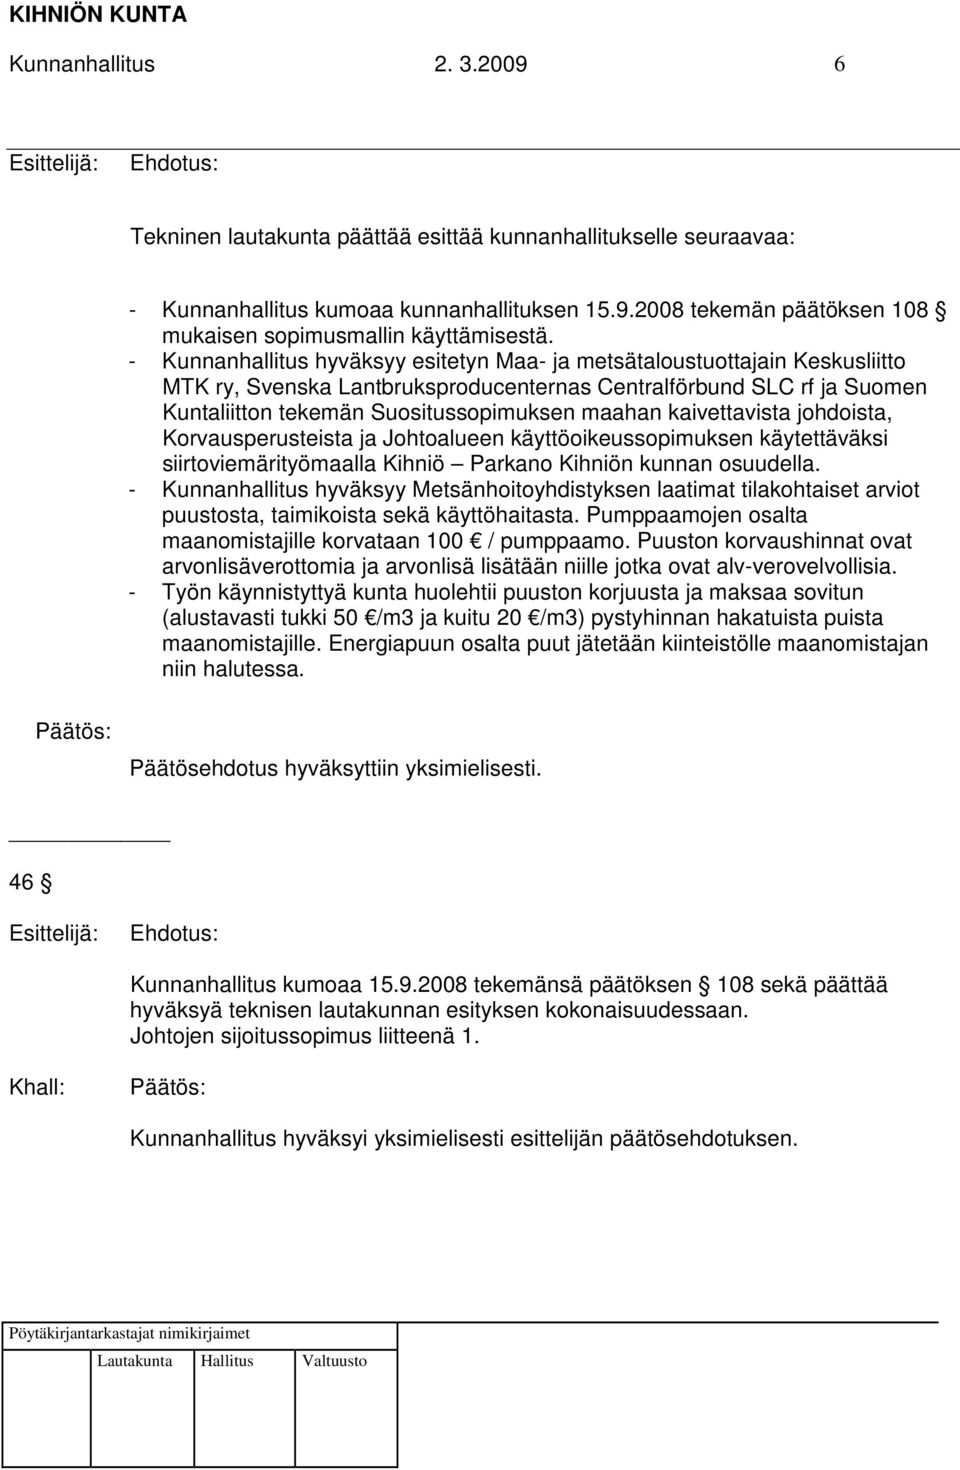 kaivettavista johdoista, Korvausperusteista ja Johtoalueen käyttöoikeussopimuksen käytettäväksi siirtoviemärityömaalla Kihniö Parkano Kihniön kunnan osuudella.